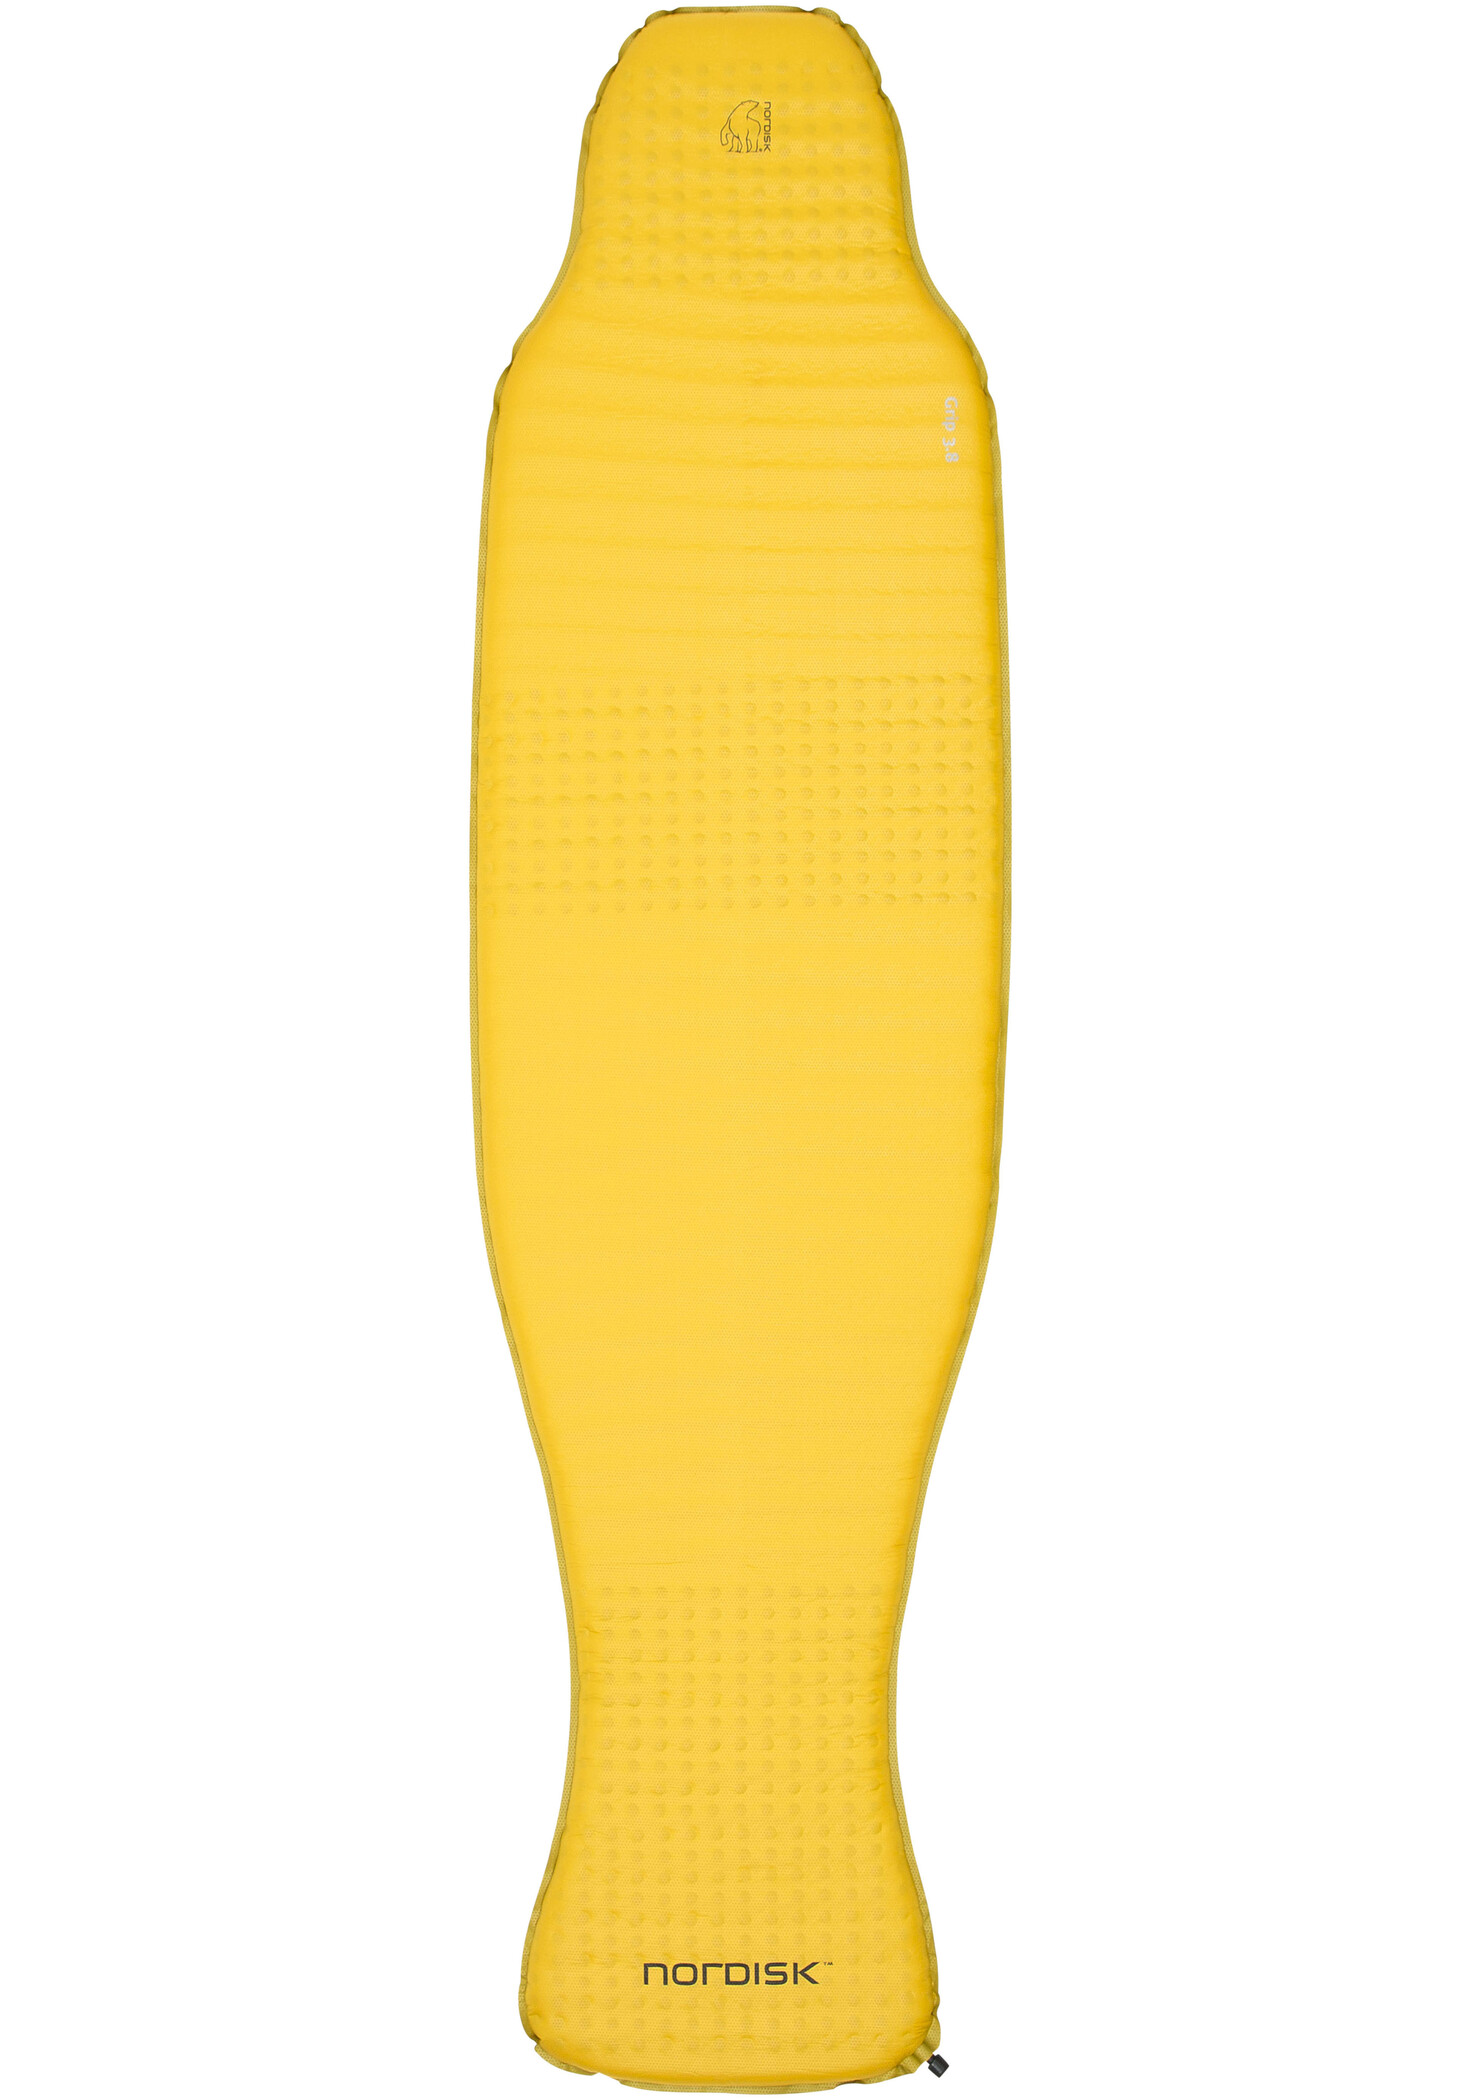 Nordisk Grip 3.8 Zelfopblaasbare mat Regular, geel/zwart